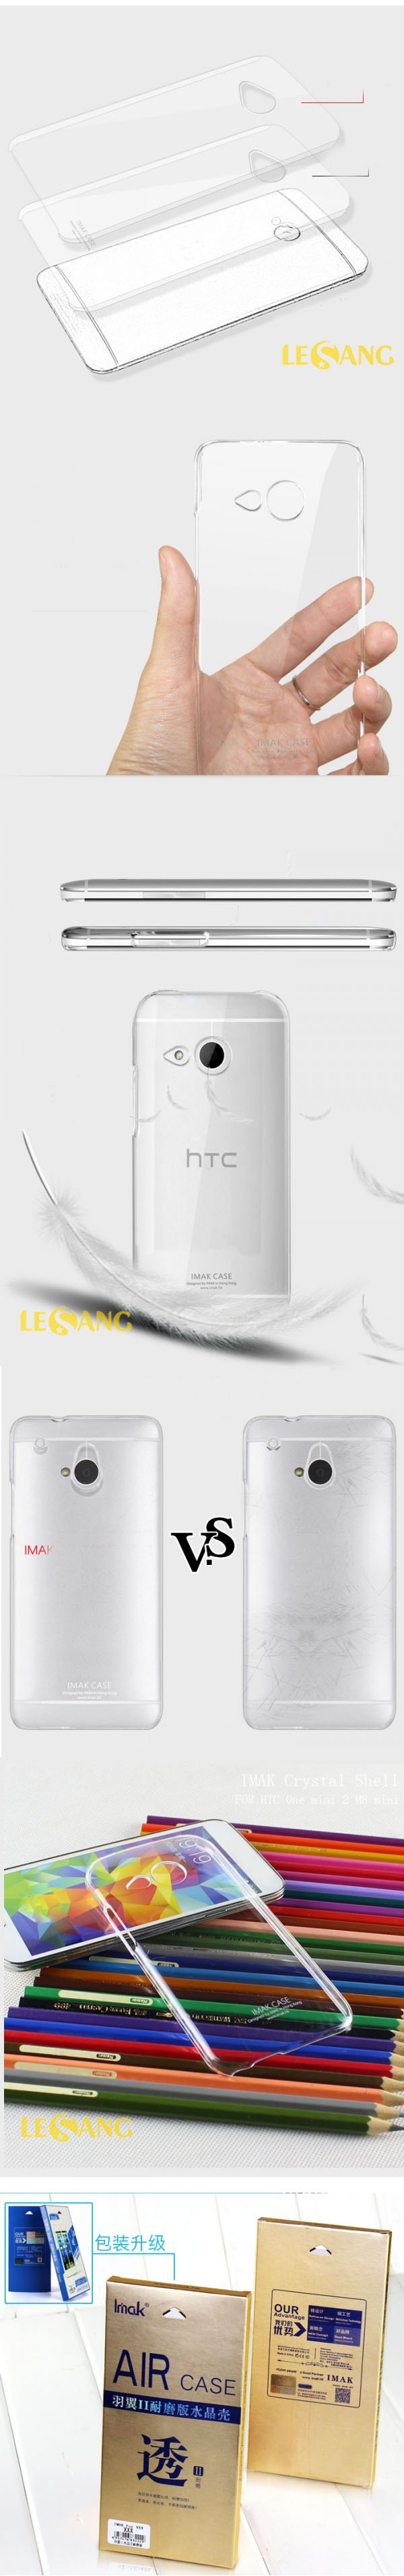 Ốp lưng HTC One M8 Mini imak trong suốt 456